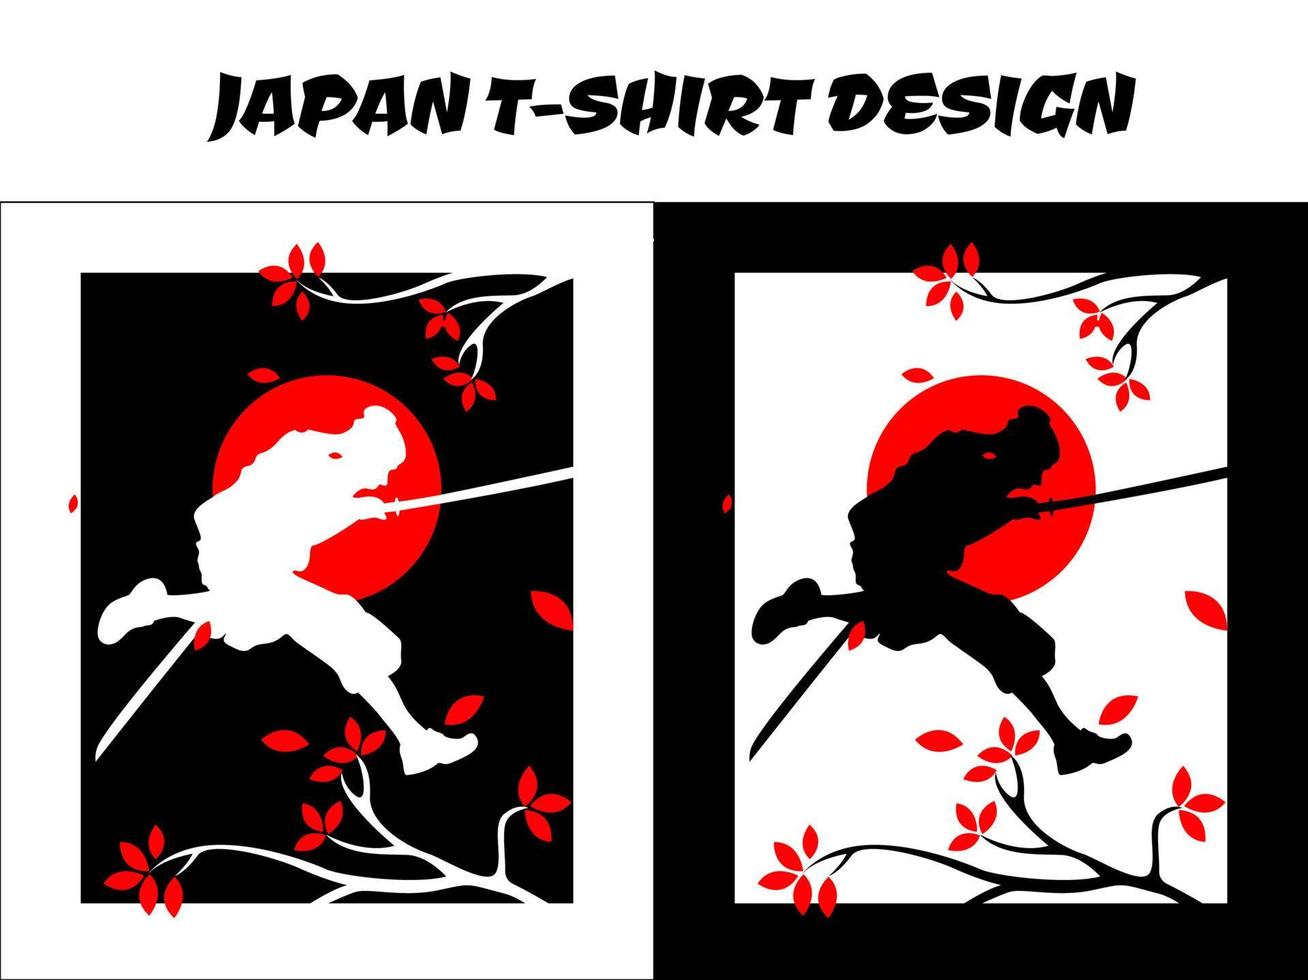 Silhouette eines Ninja mit zwei Schwertern, Krieger, Silhouette japanischer Ninja-Vektor für Design-T-Shirt-Konzept, Silhouette Ninja, japanisches T-Shirt-Design, Silhouette für ein japanisches Thema, laufender Ninja vektor